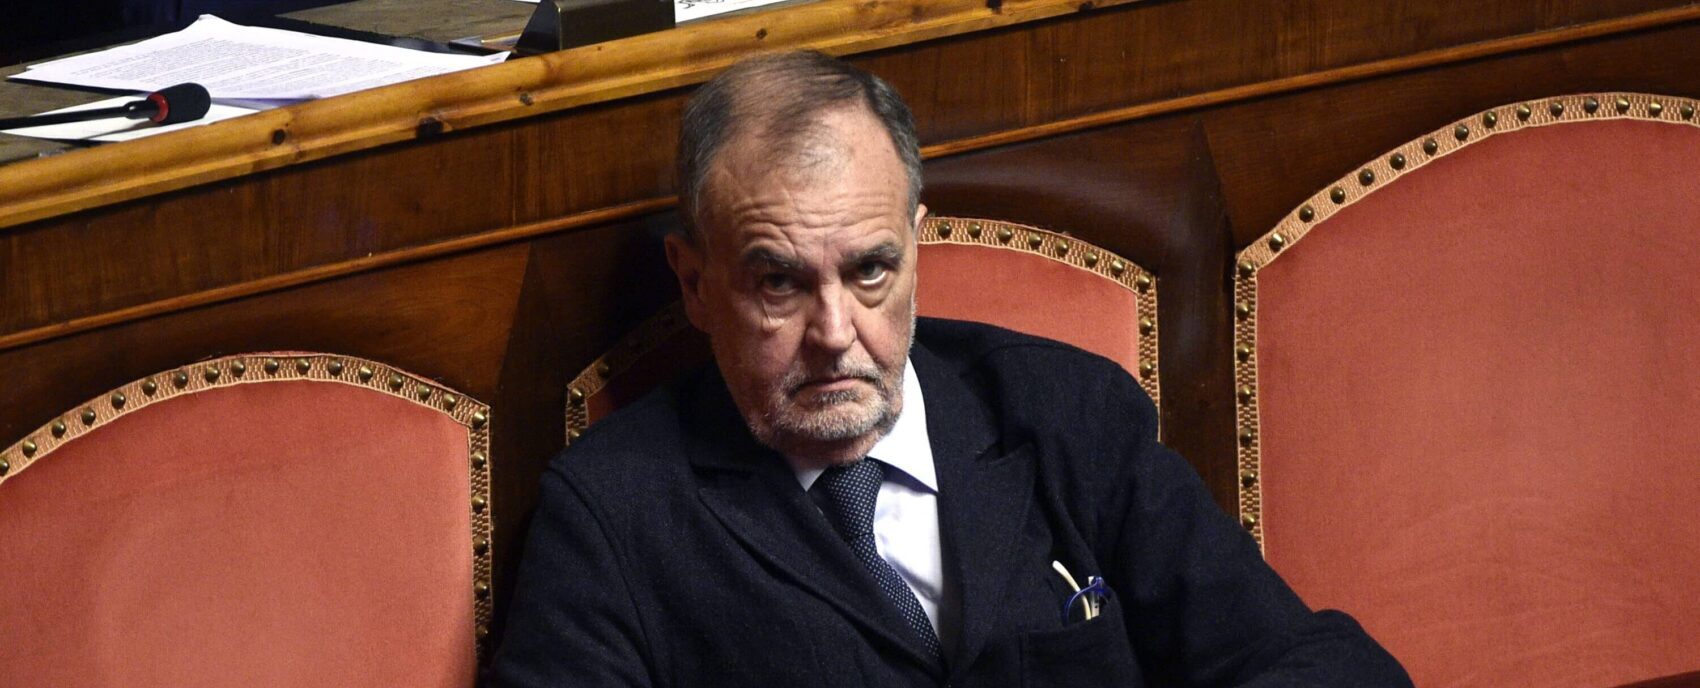 Calderoli deposita il disegno di legge sull’Autonomia. Fratelli d’Italia tace. Opposizioni e sindacati insorgono contro il ministro: “Spacca il Paese”